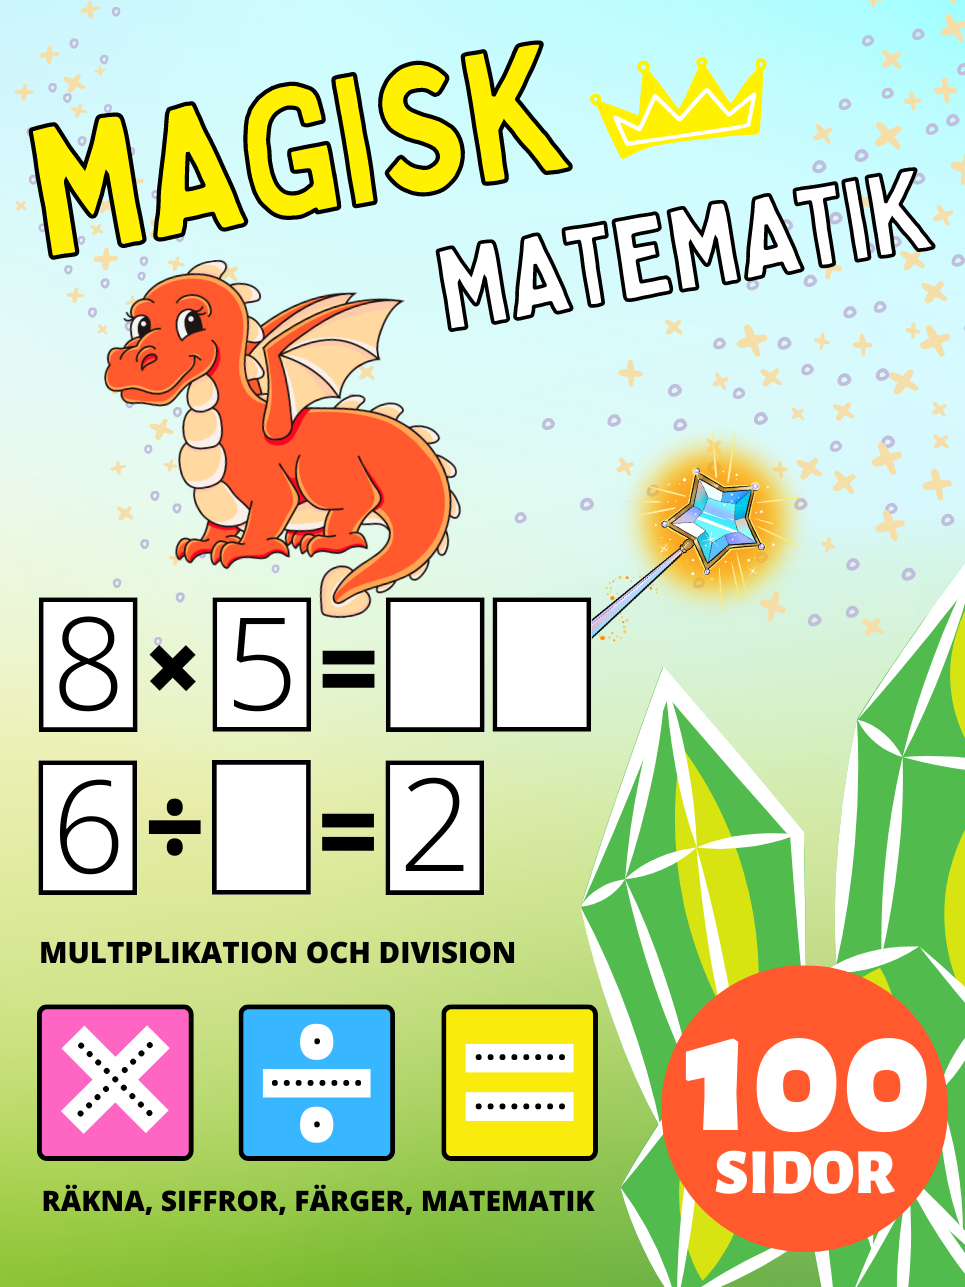 Förskola Magisk Matematik Aktivitetsböcker för Barn i åldrarna 2-4-8 år, Multiplikation och Division, Multiplicera och Dividera